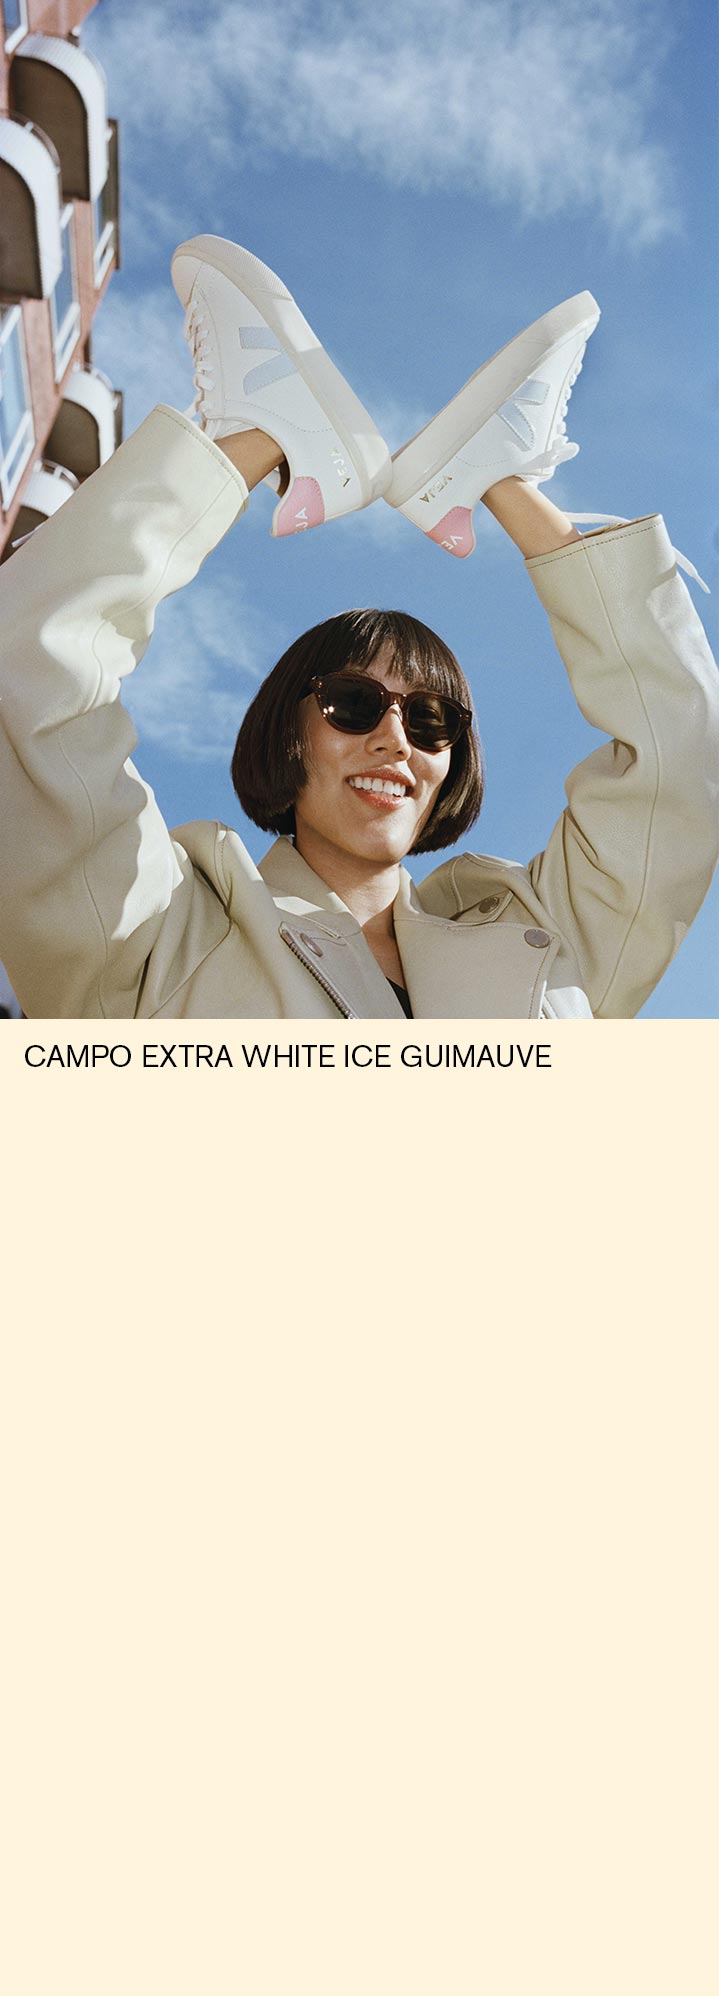 femme portant dans ses mains des basket veja campo extra white ice guimauve